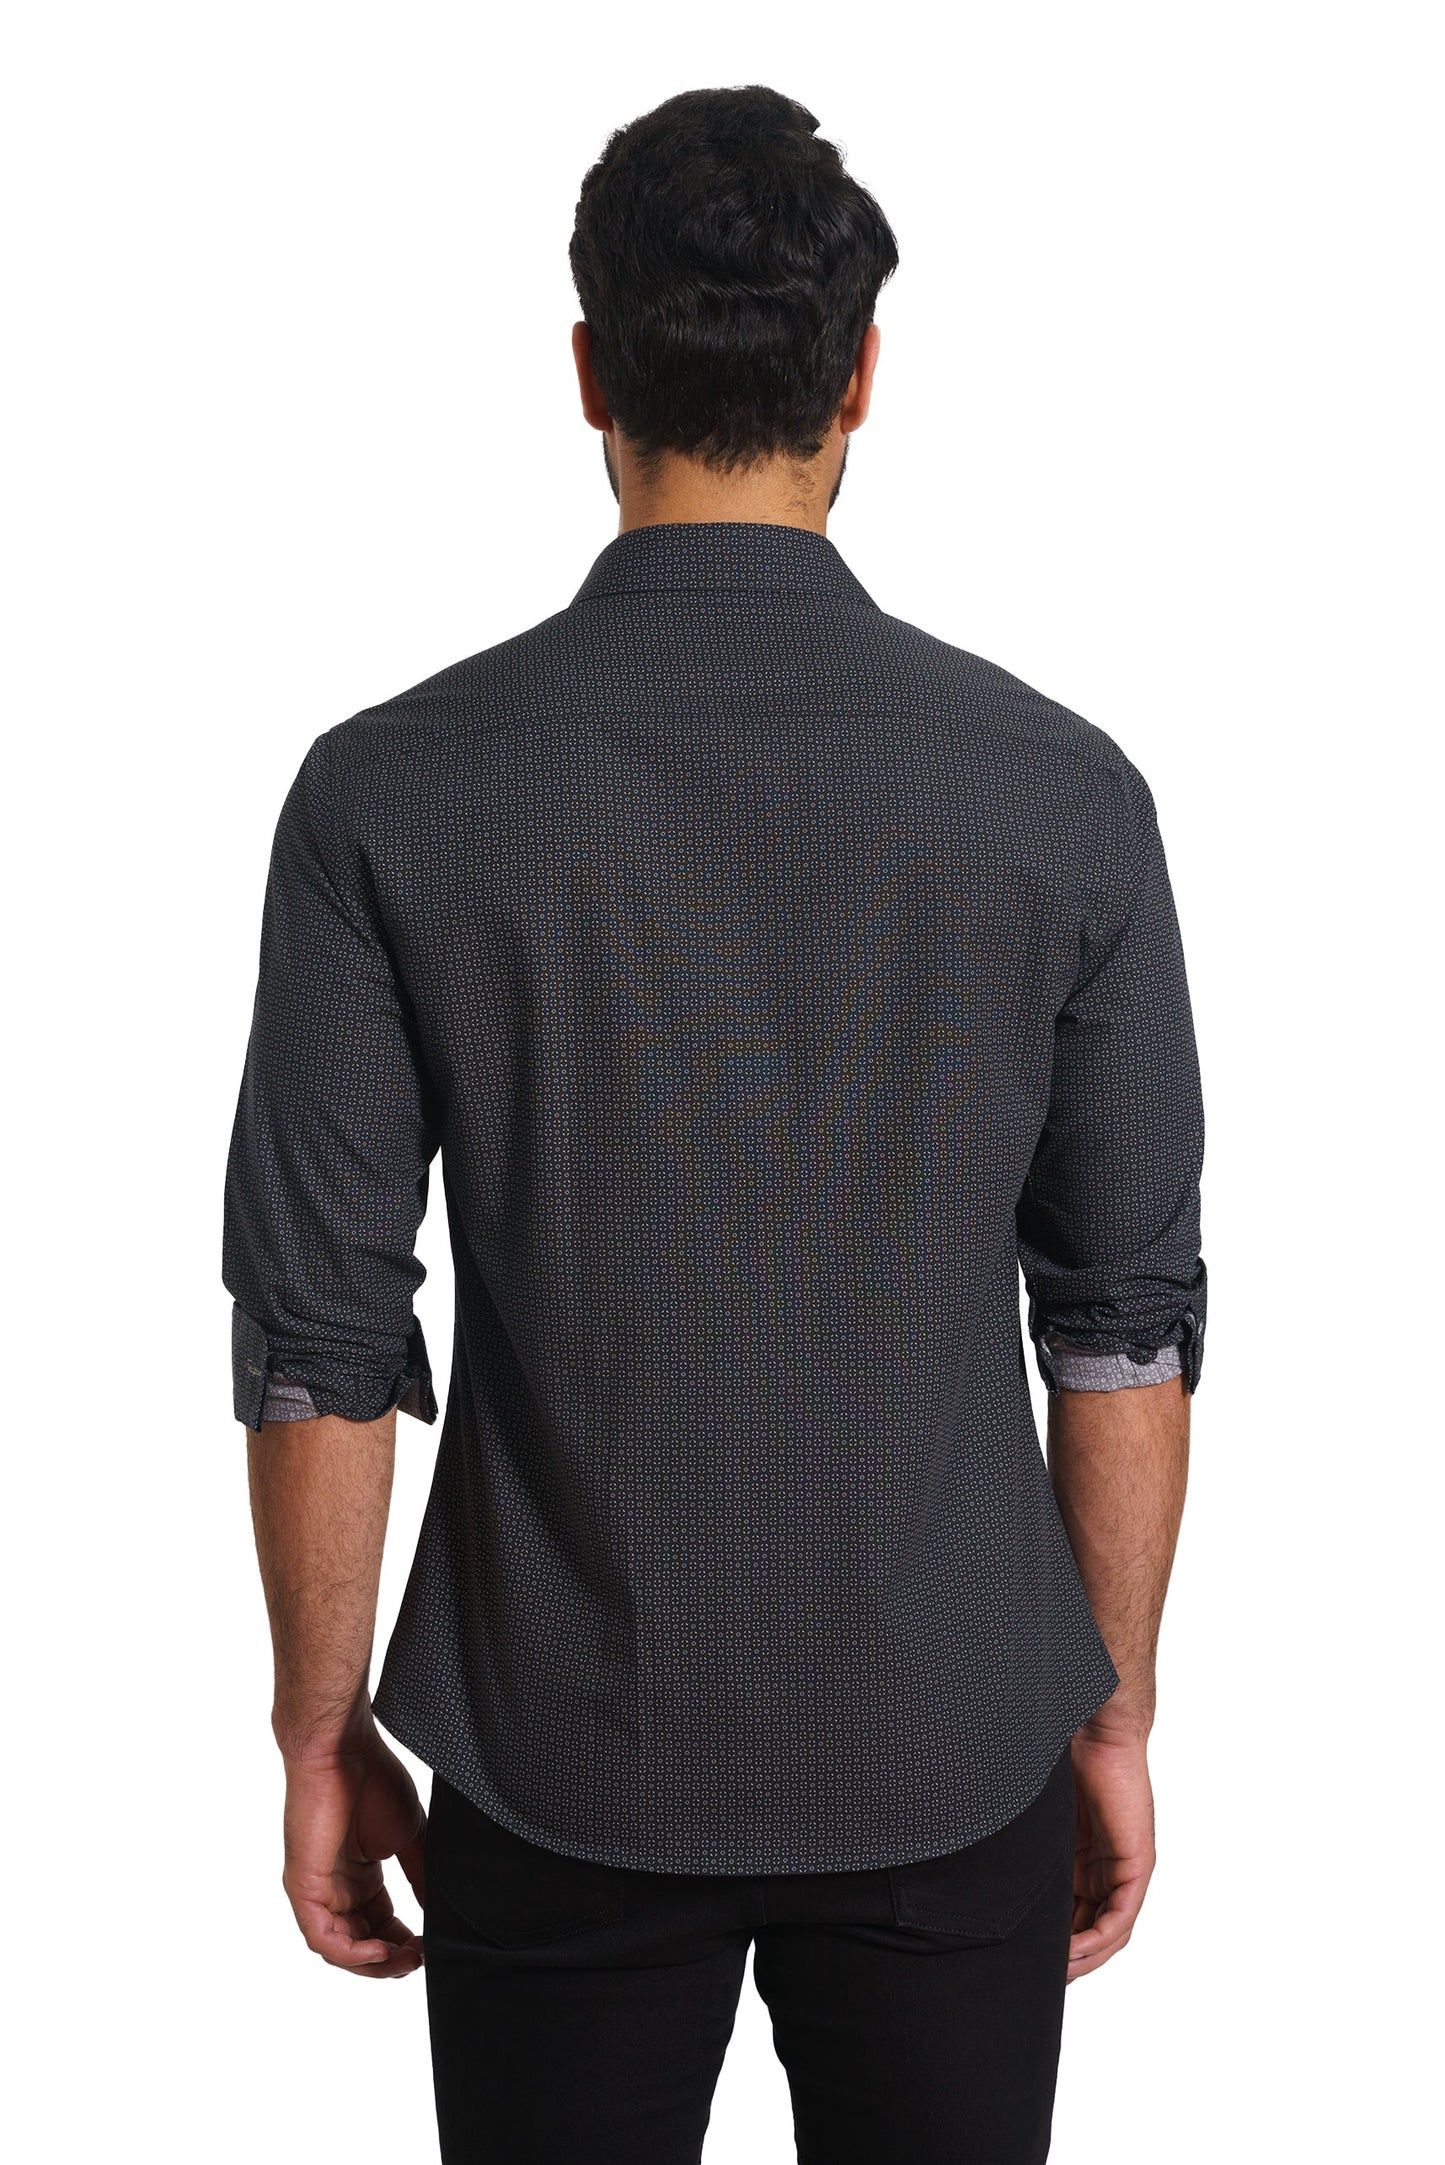 Black Long Sleeve Shirt TH-2854 Back